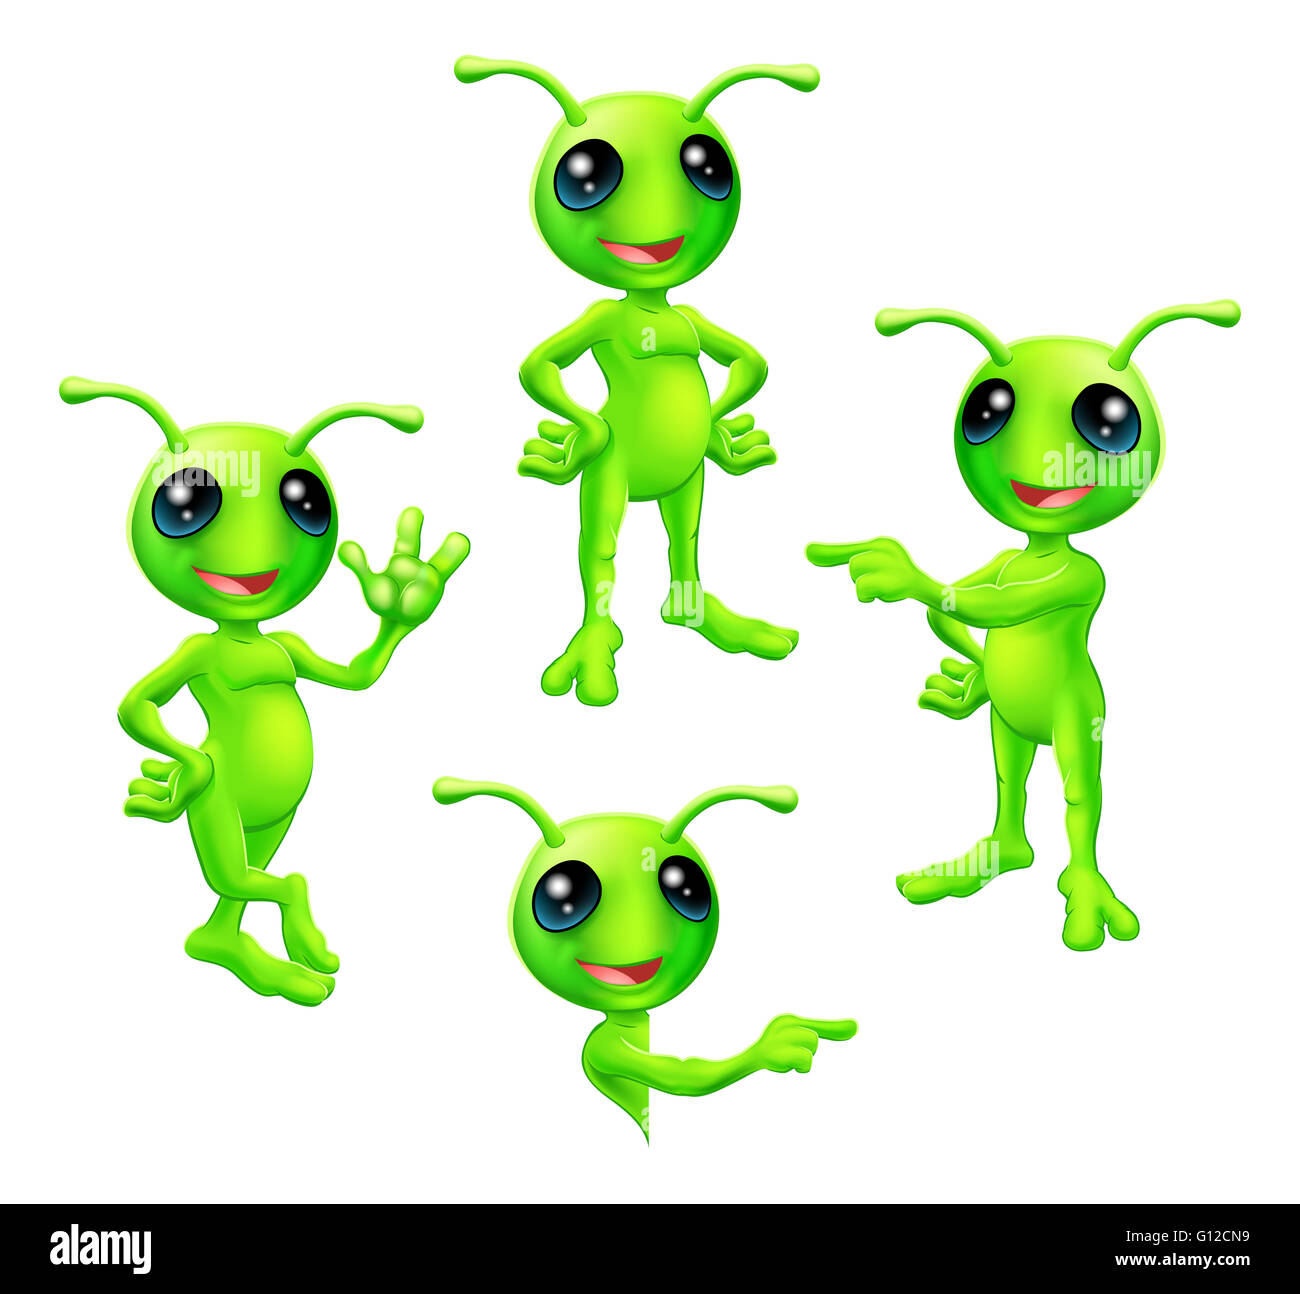 Un cartoon carino verde alien carattere marziano con le antenne in pose diverse Foto Stock